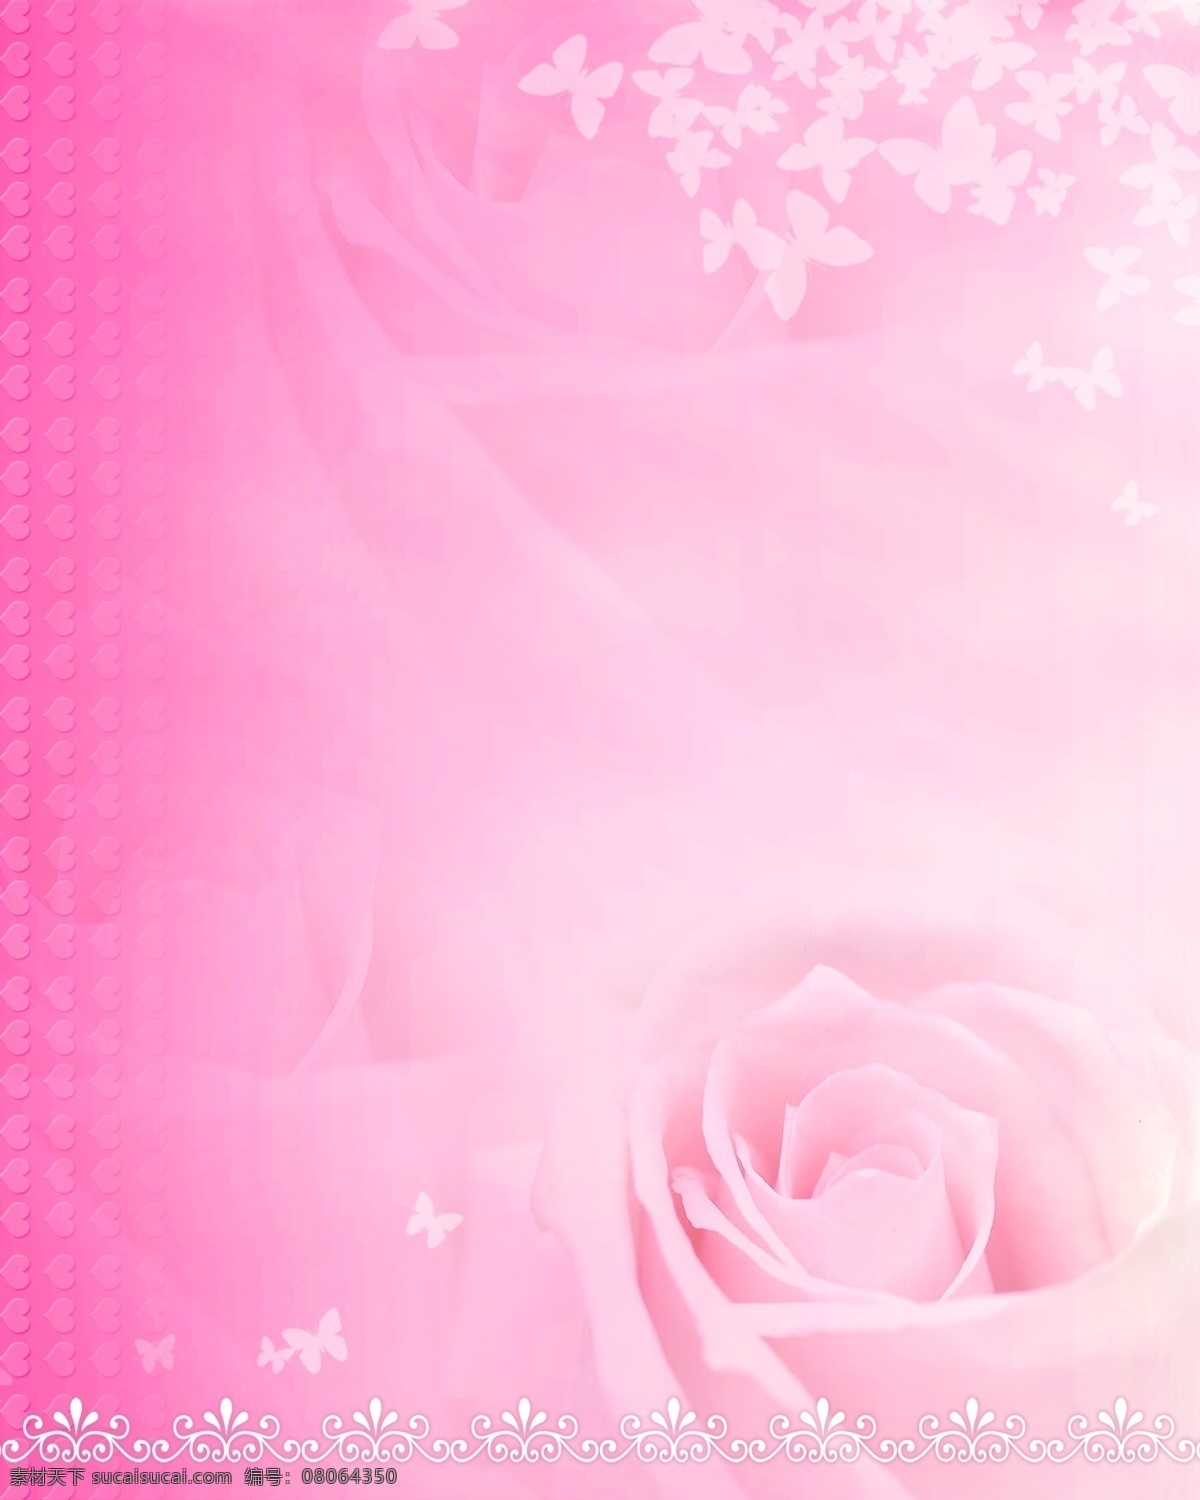 粉红玫瑰背景 心型 玫瑰 粉红 蝴蝶 桃心 花蕾 欧式花纹 分层 背景素材 源文件库